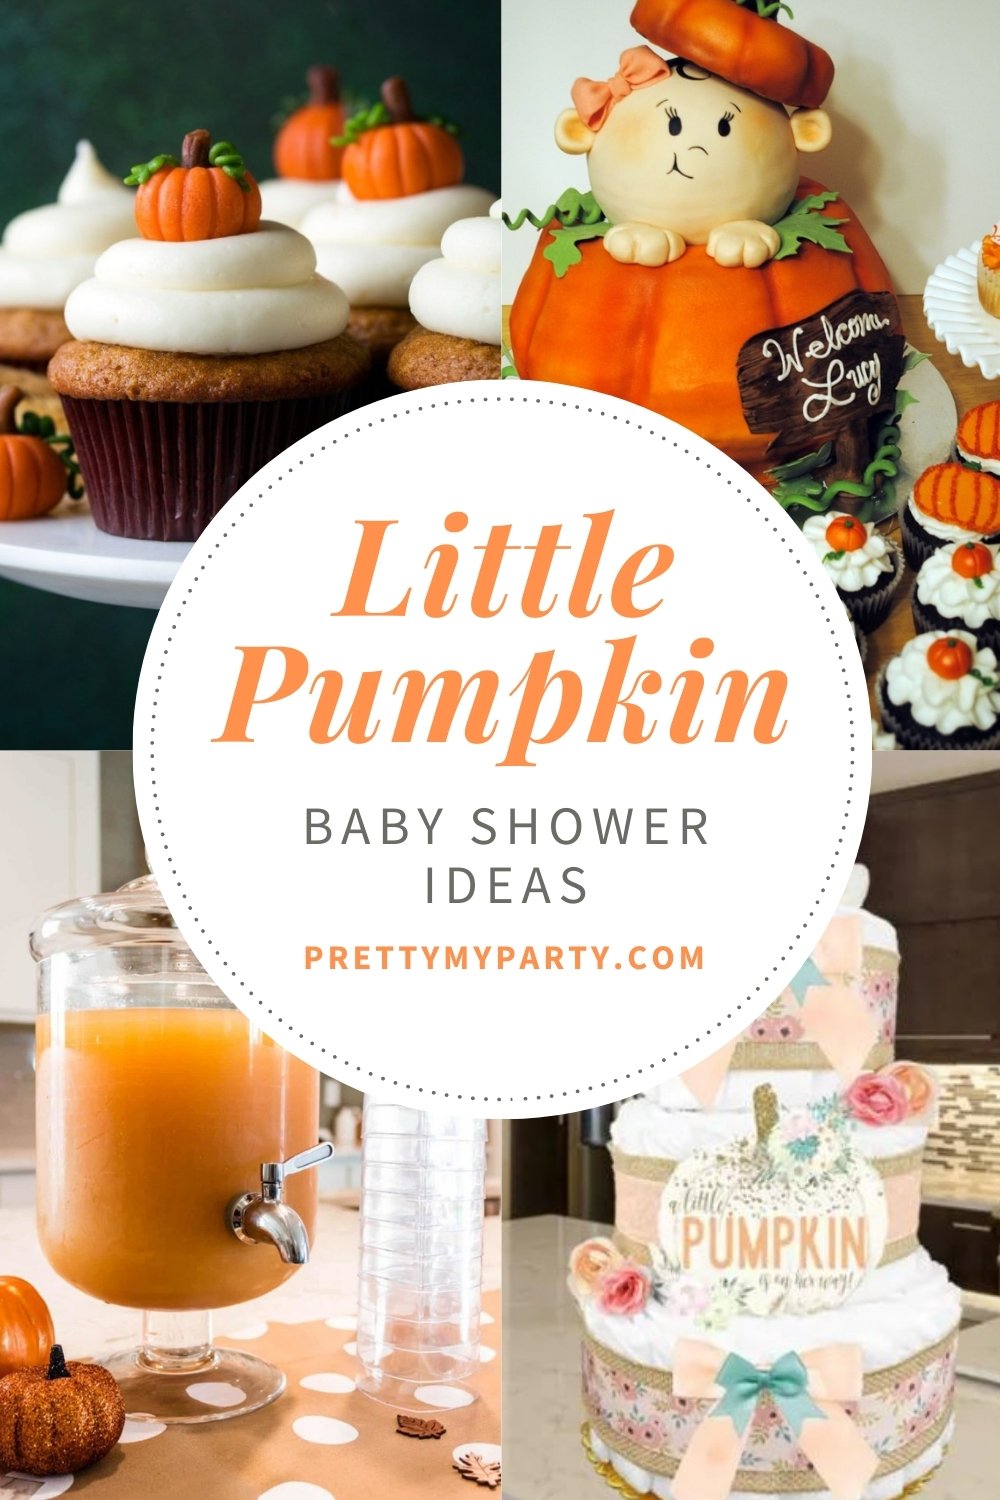 Little Pumpkin Baby Shower Ideas